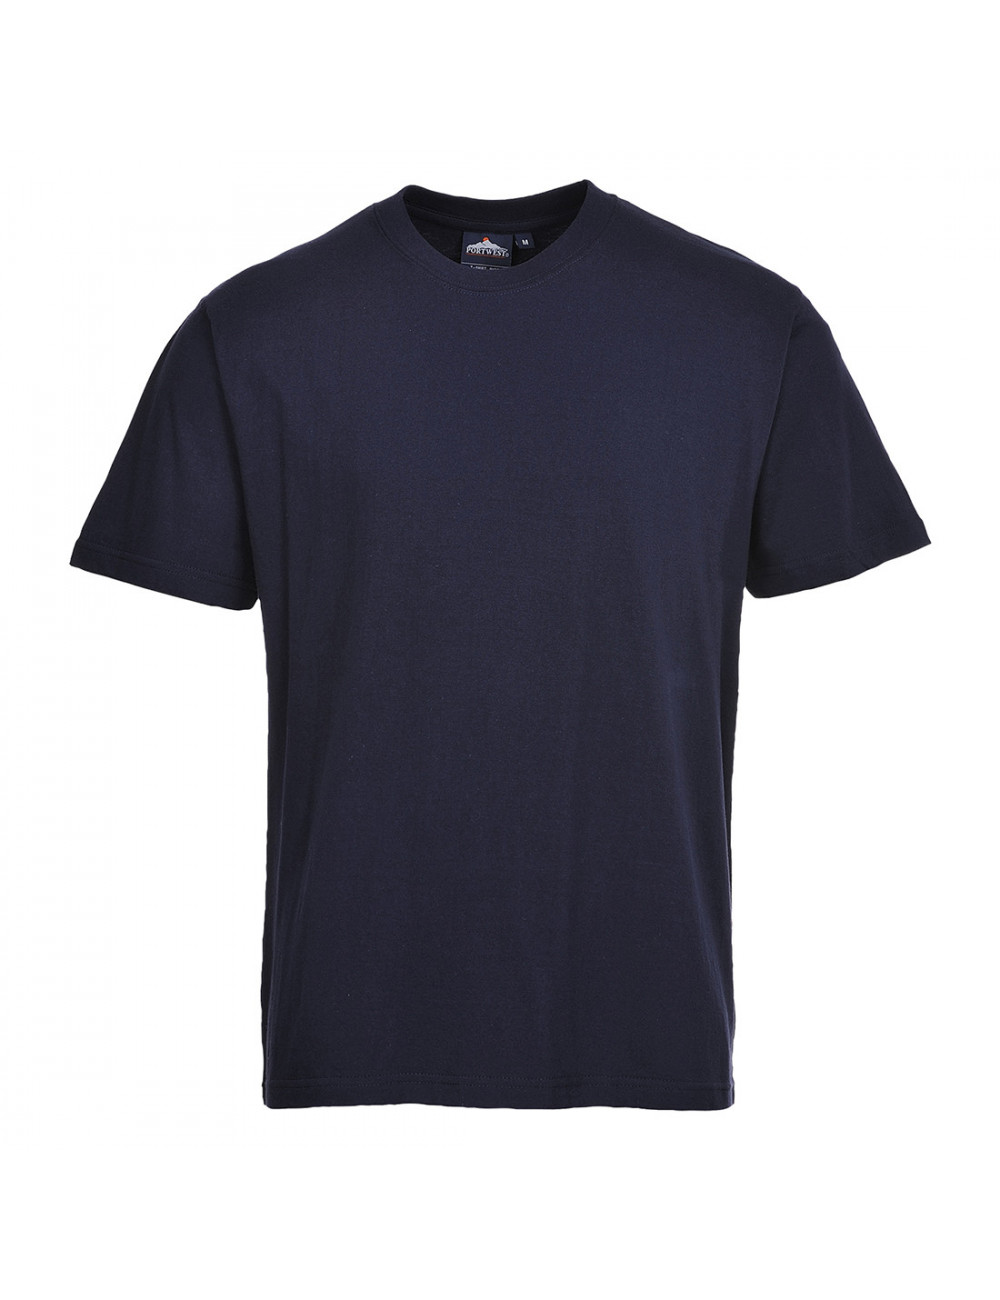 Turin Premium T-Shirt, Marineblau, Portwest